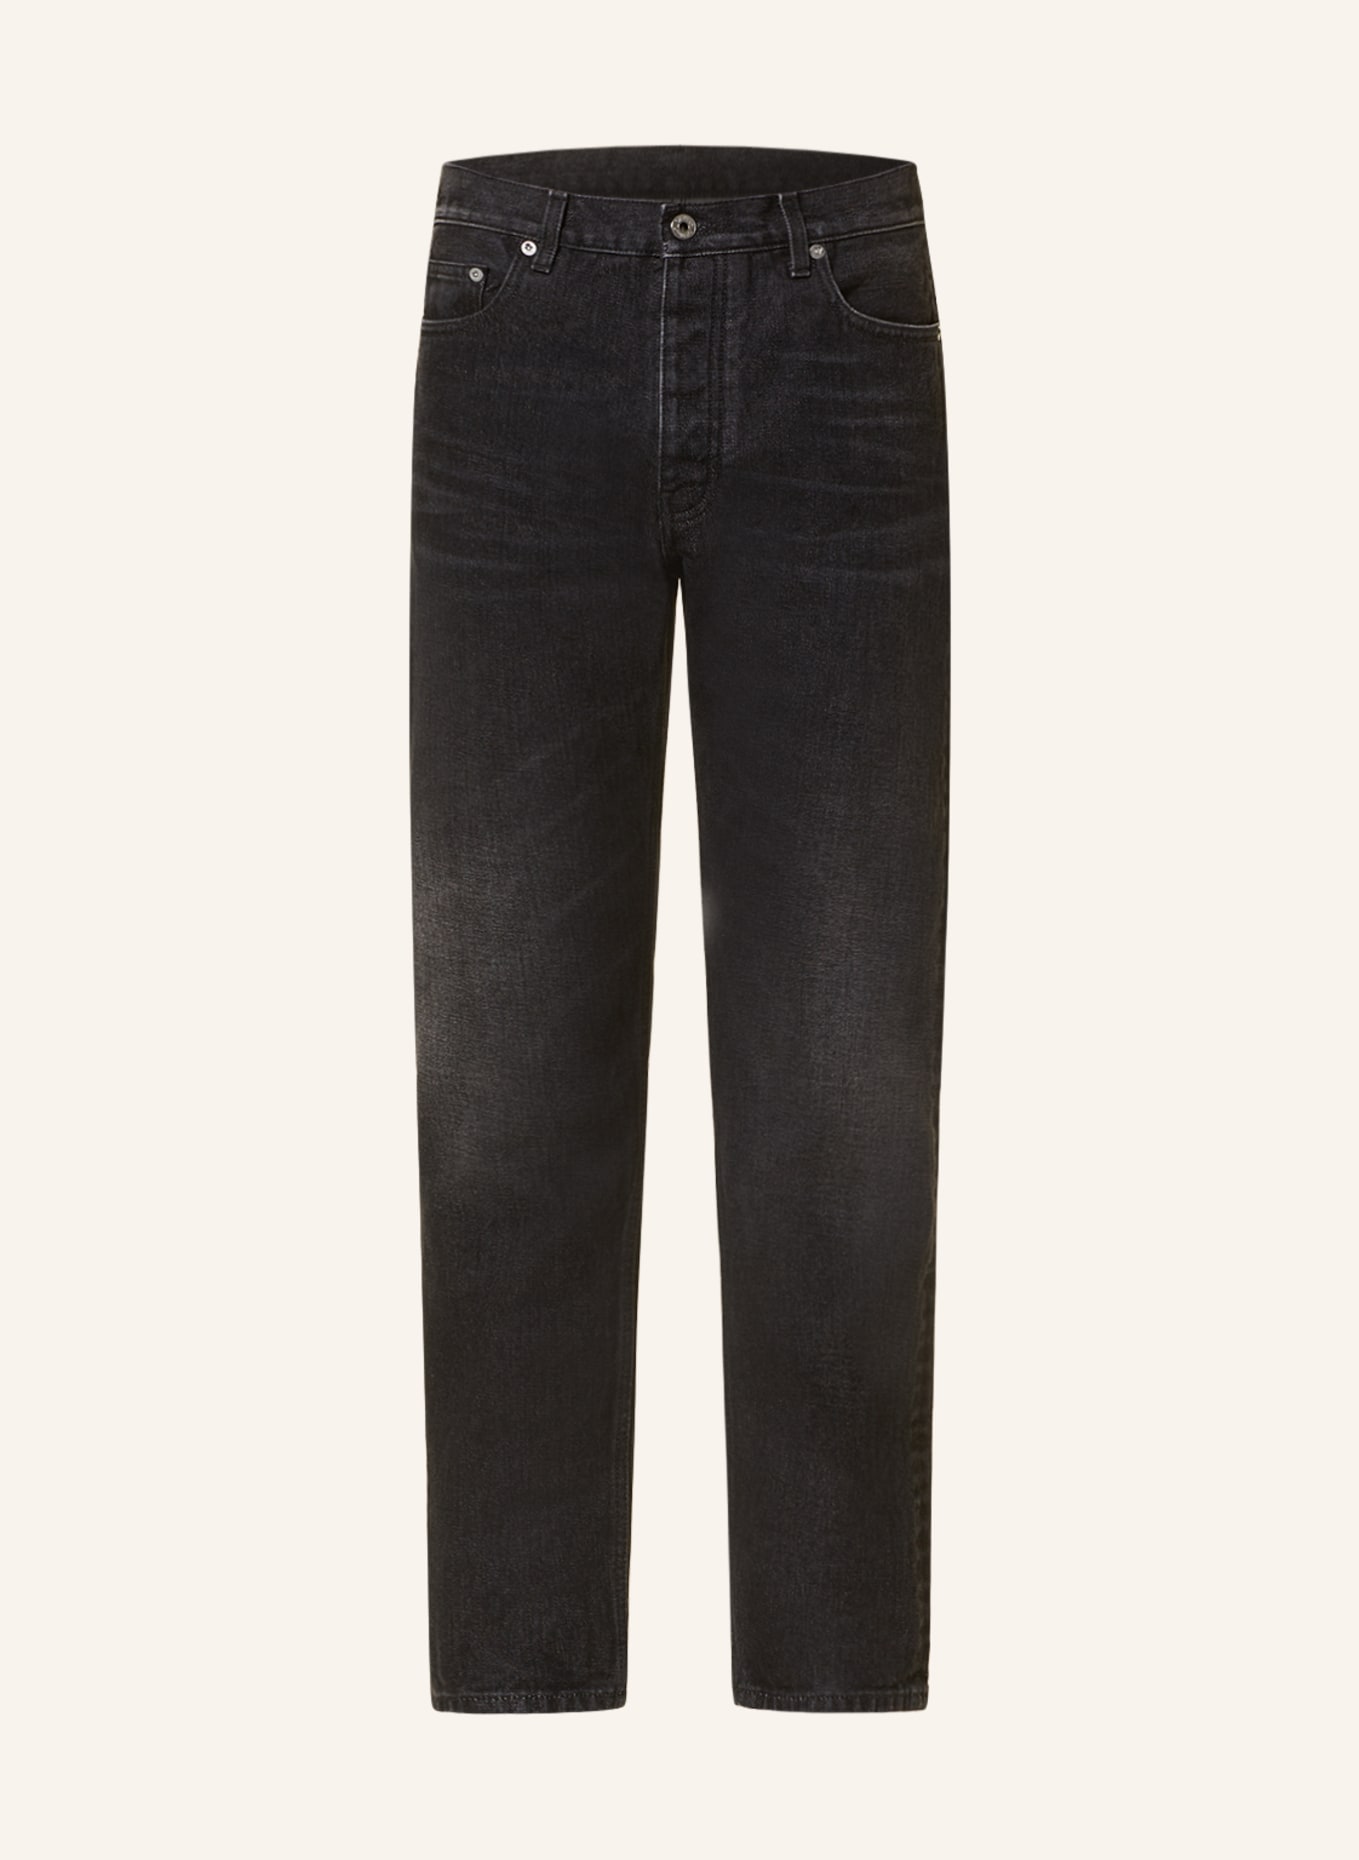 Off-White Jeans regular fit, Color: 0900 vintage grey no co (Image 1)